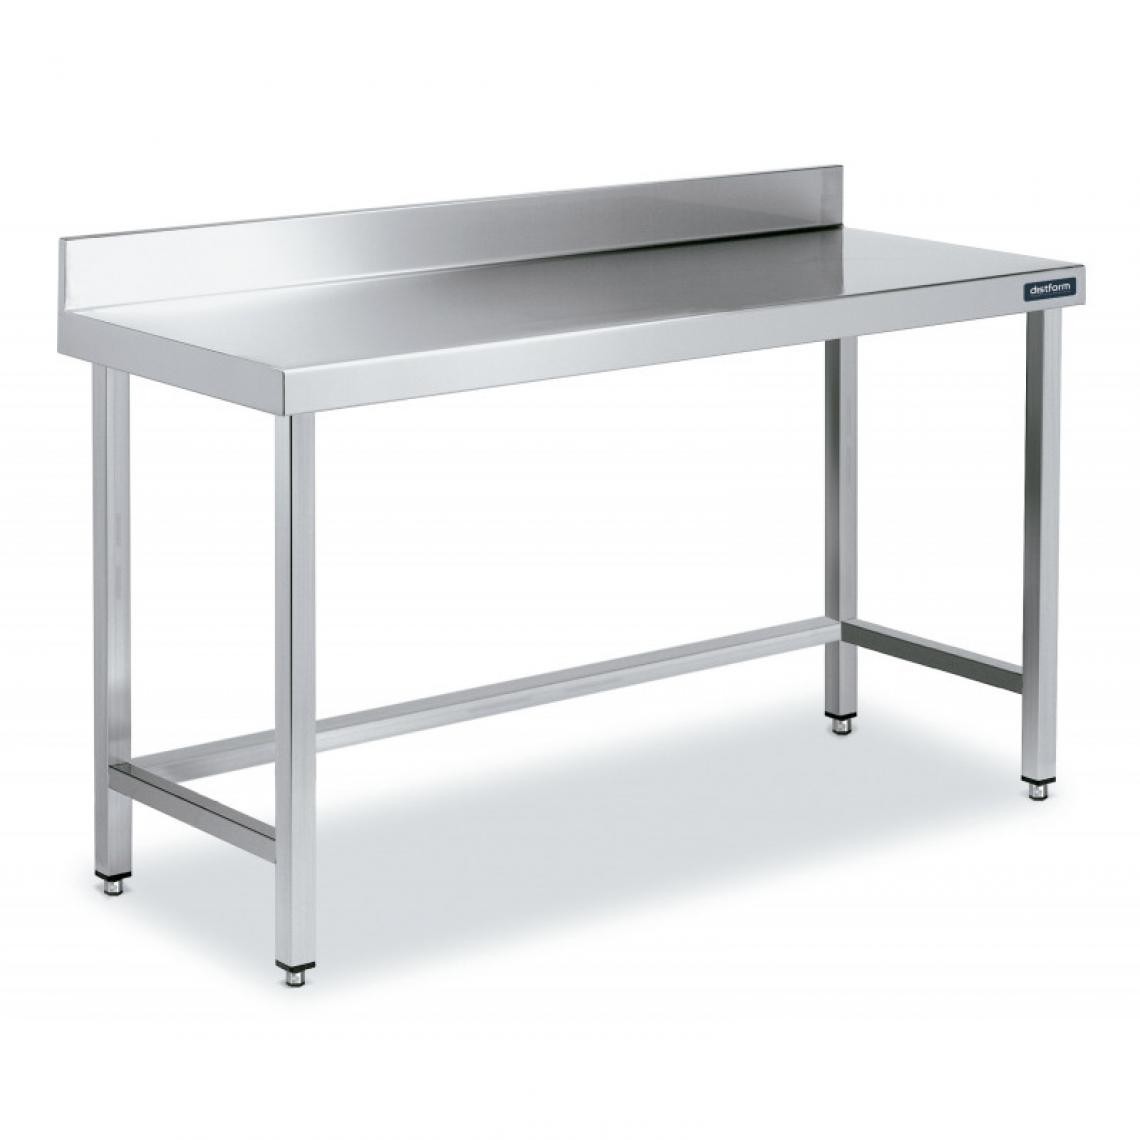 DISTFORM - Table Adossée en Inox avec Renforts Profondeur 600 mm - Distform - Acier inoxydable600x600 - Tables à manger